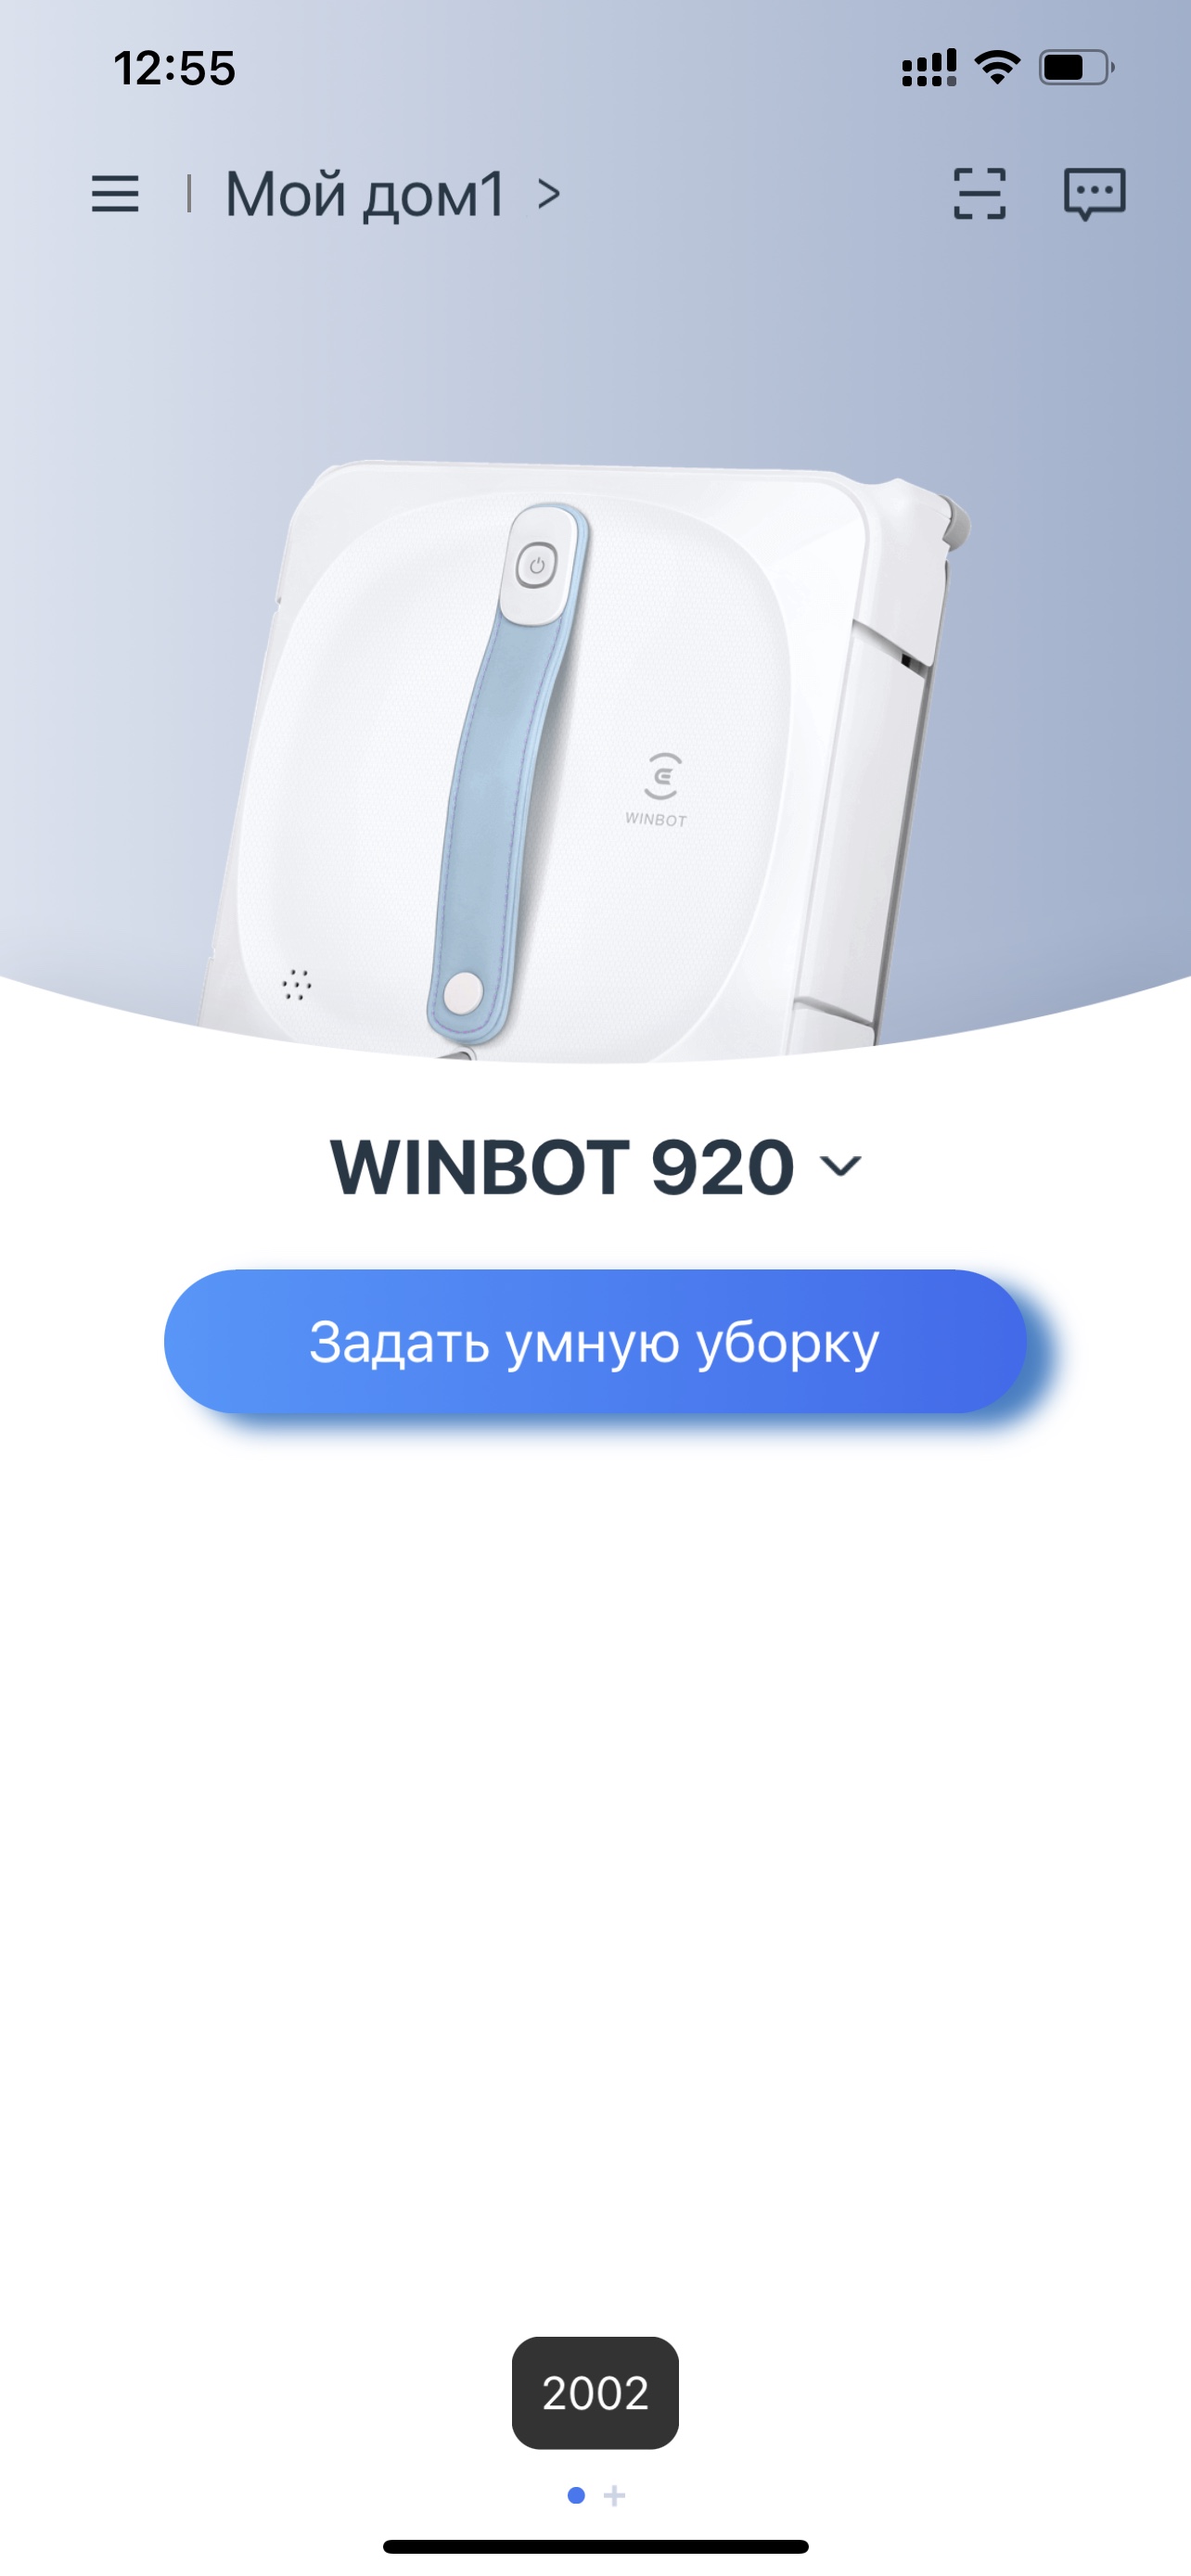 WINBOT 920